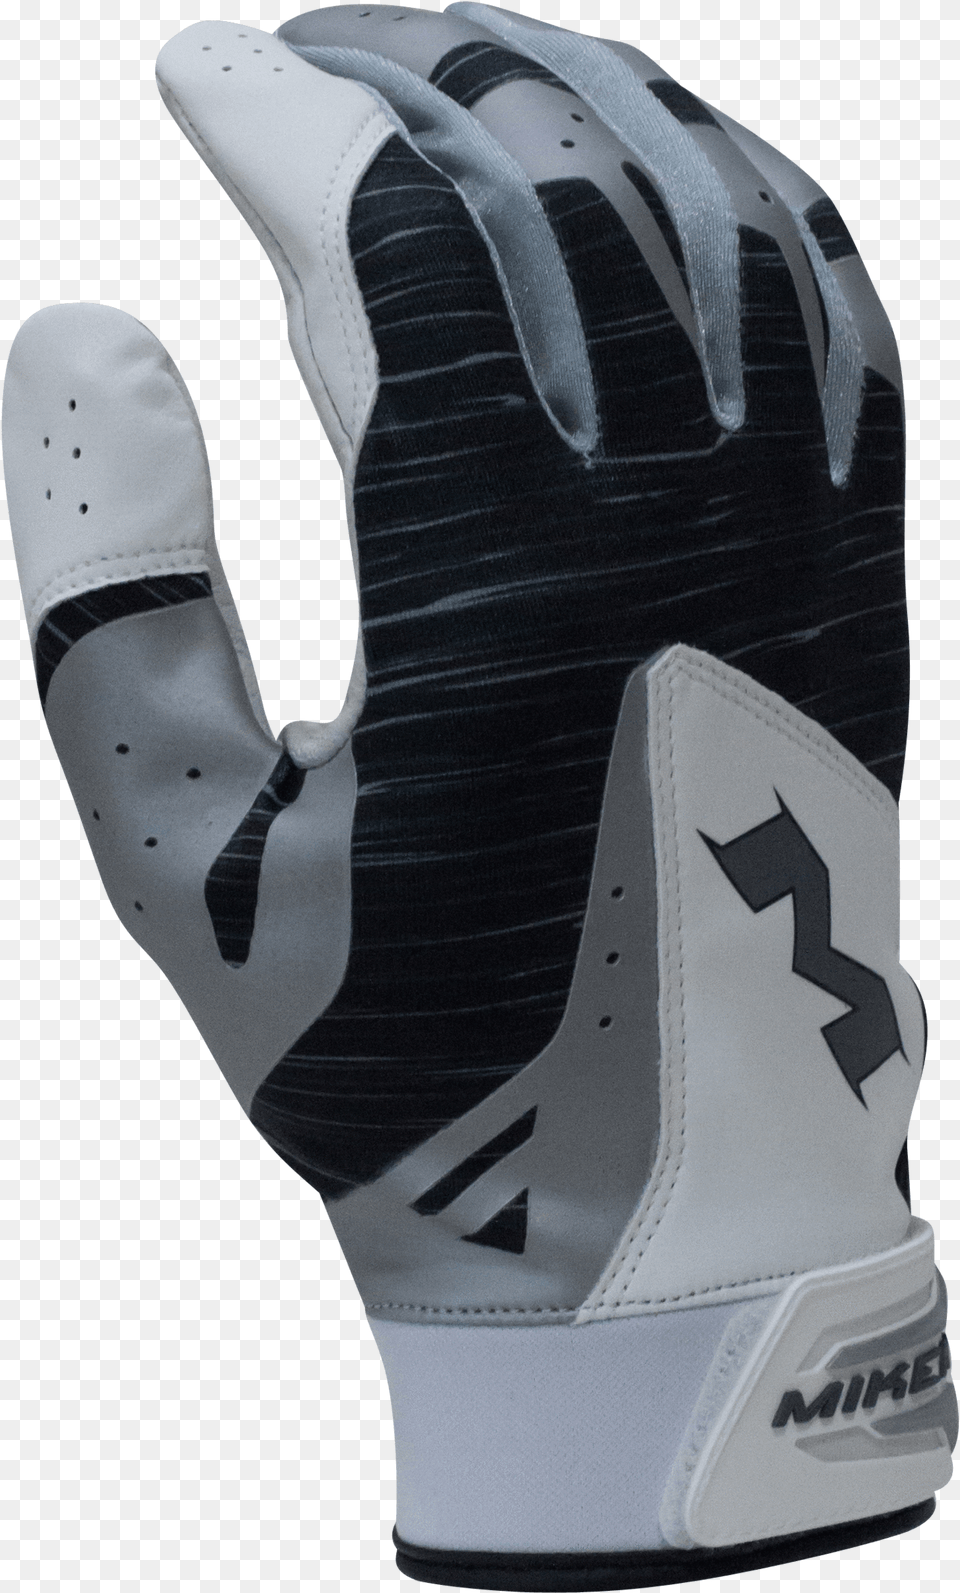 2018 Miken Pro Black Batting Gloves Miken Batting Gloves, Baseball, Baseball Glove, Clothing, Glove Free Png Download